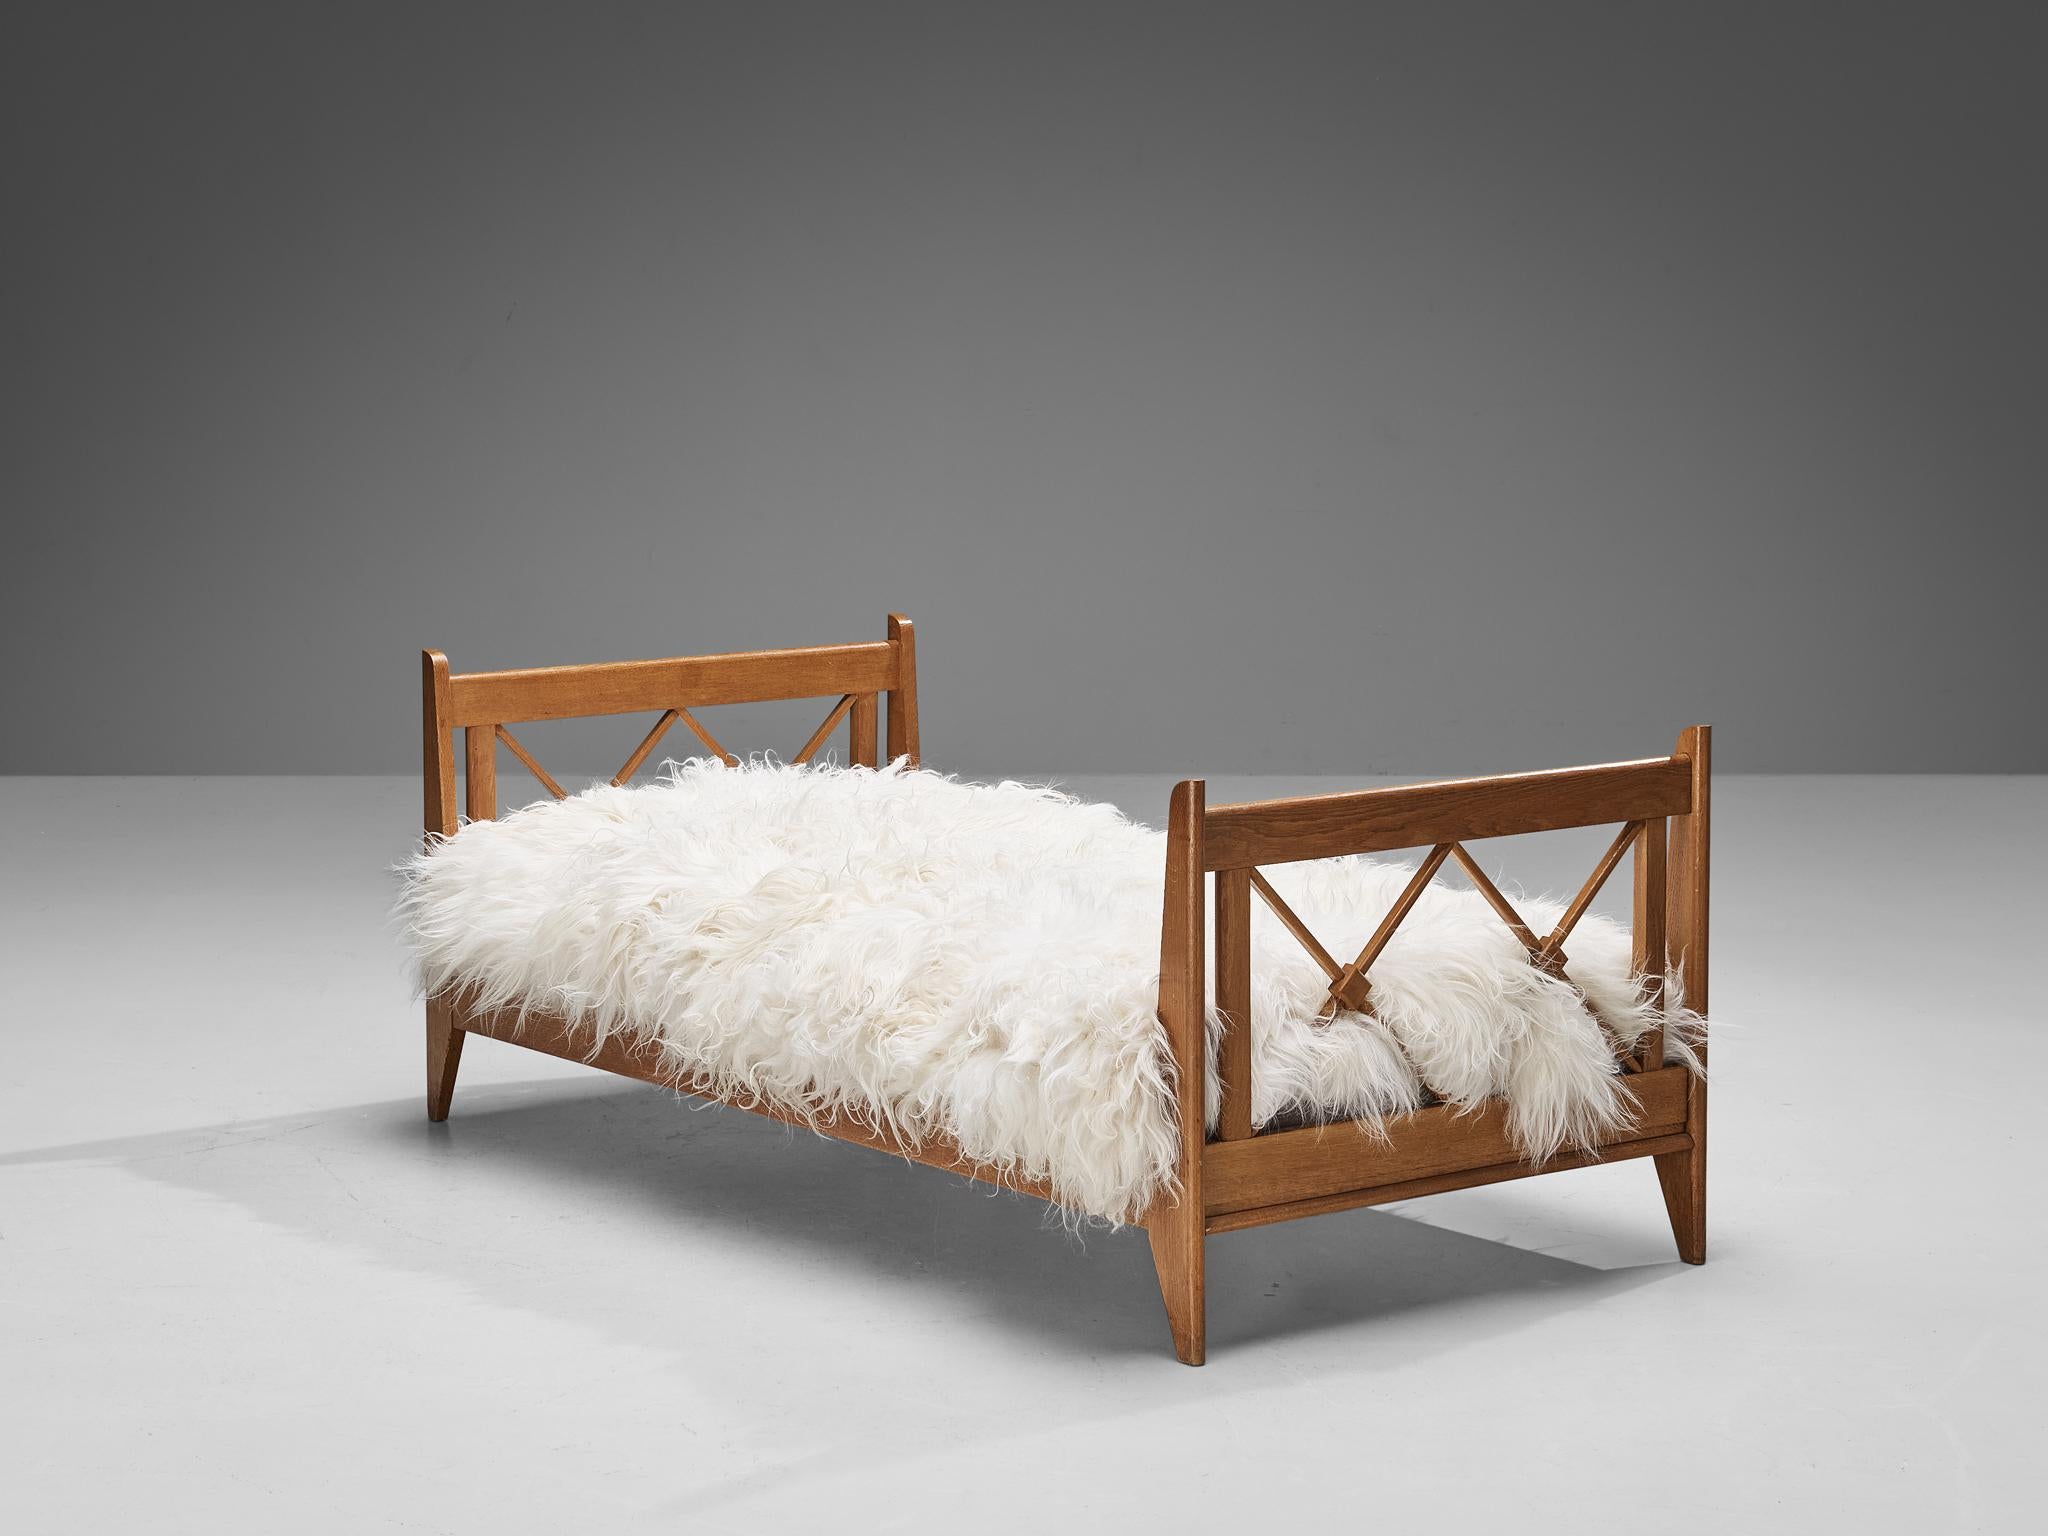 Lit simple, chêne, France, années 1950.

Un lit simple en bois de chêne de très belle facture. Il témoigne d'un savoir-faire exceptionnel, comme en témoignent les croix entrecroisées de la tête et du pied de lit. Les lignes épurées, ainsi que le